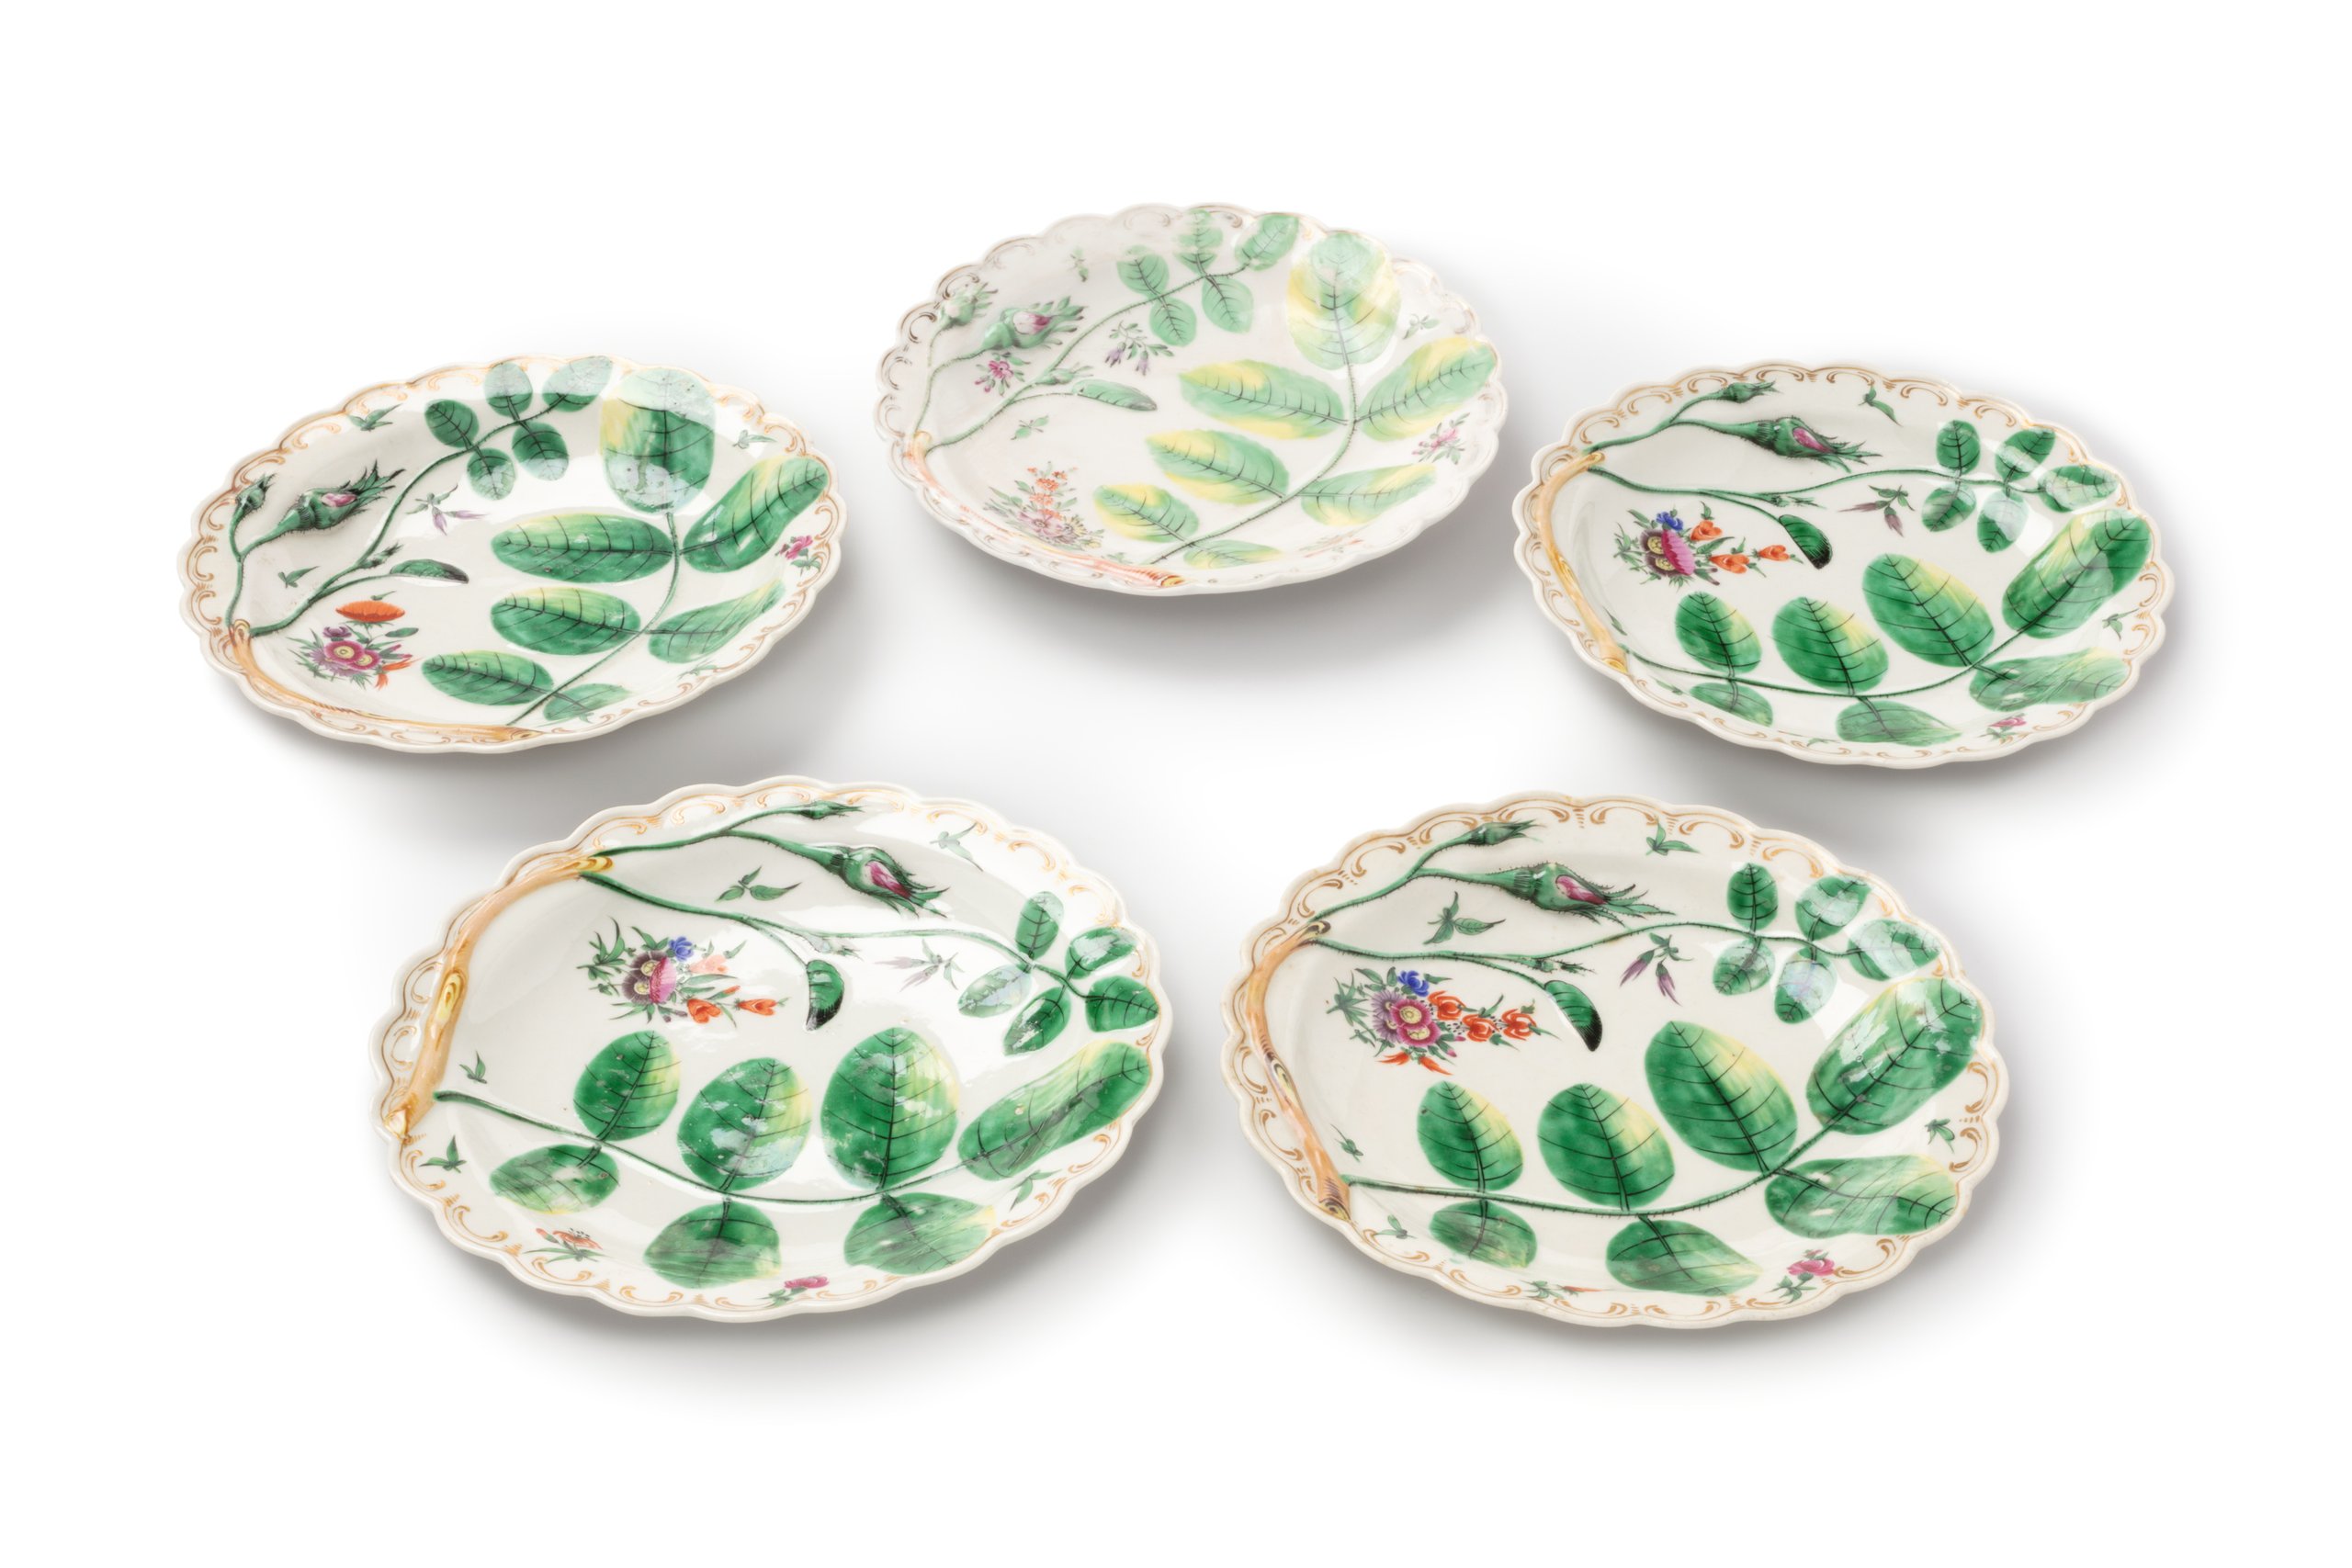 Royal Worcester 'Blind Earl' porcelain plates